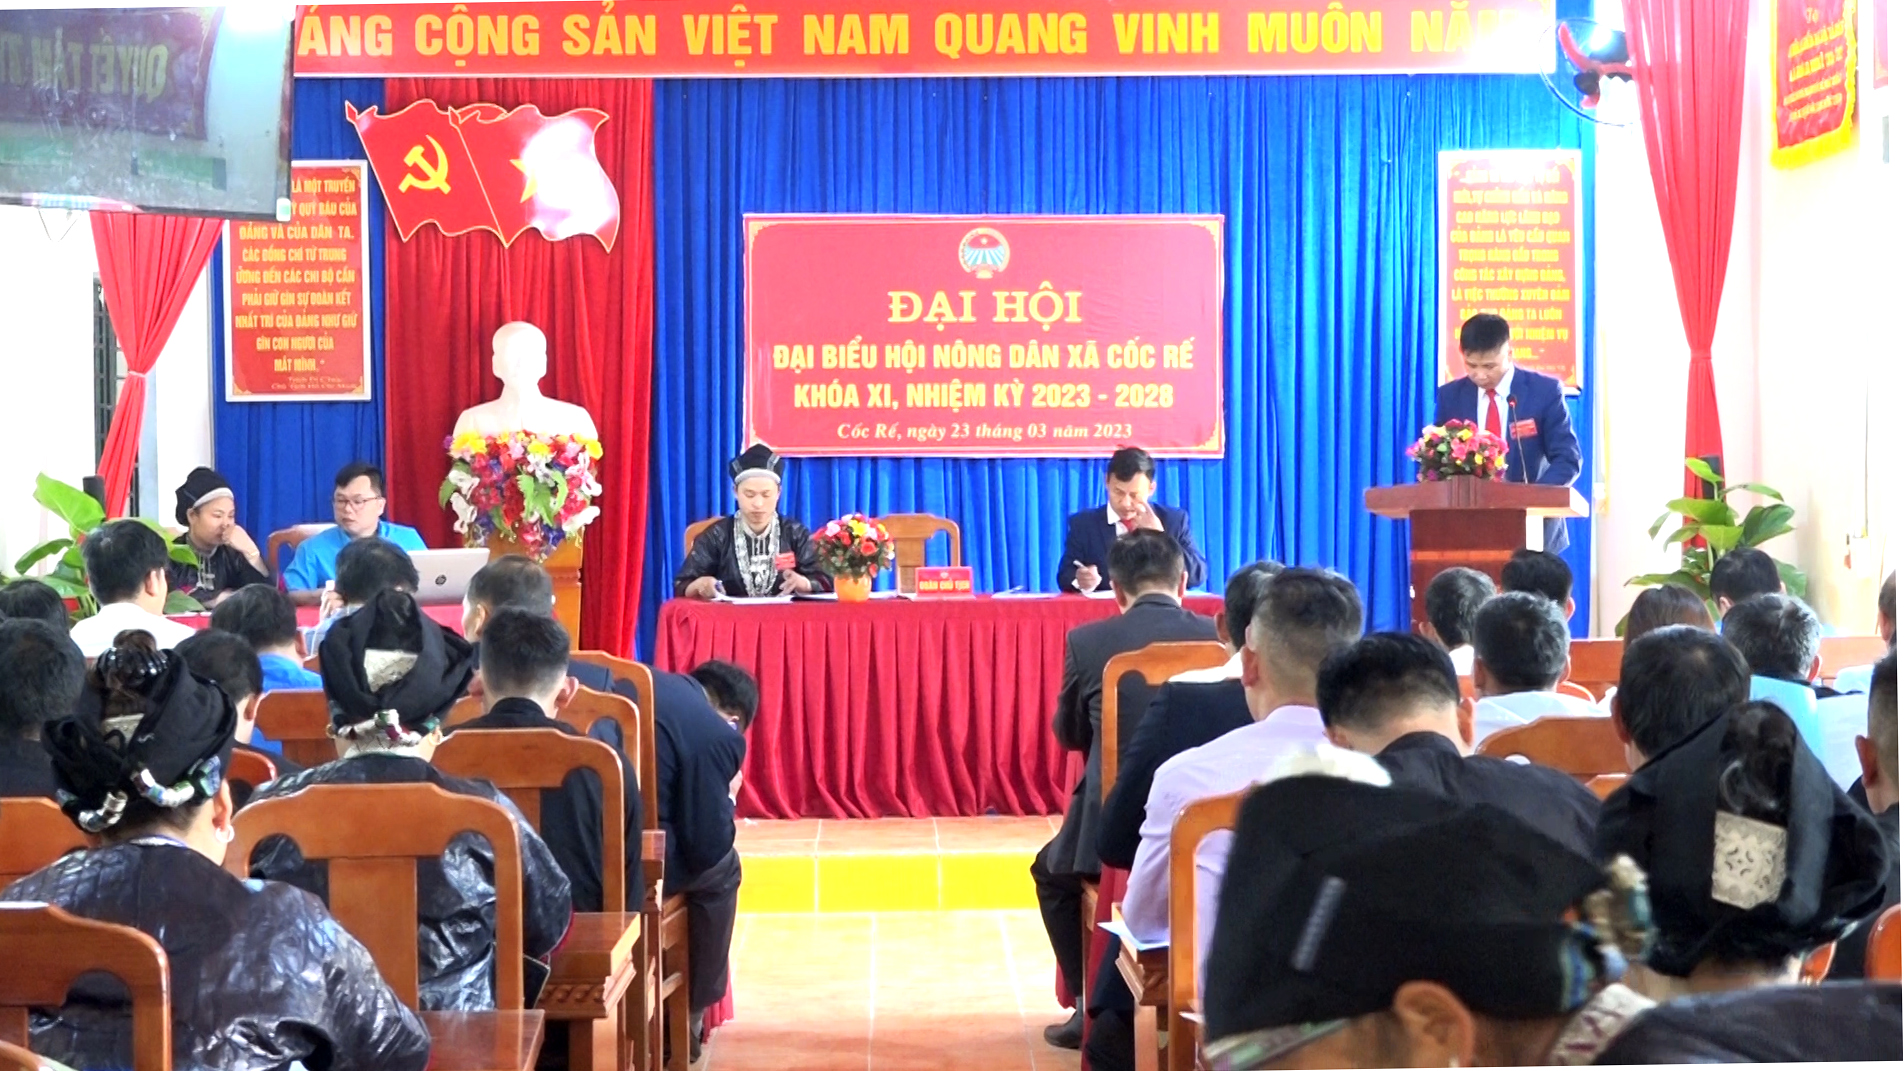 Đại hội Đại biểu Hội nông dân xã Cốc Rế khoá XI nhiệm kỳ 2023-2028